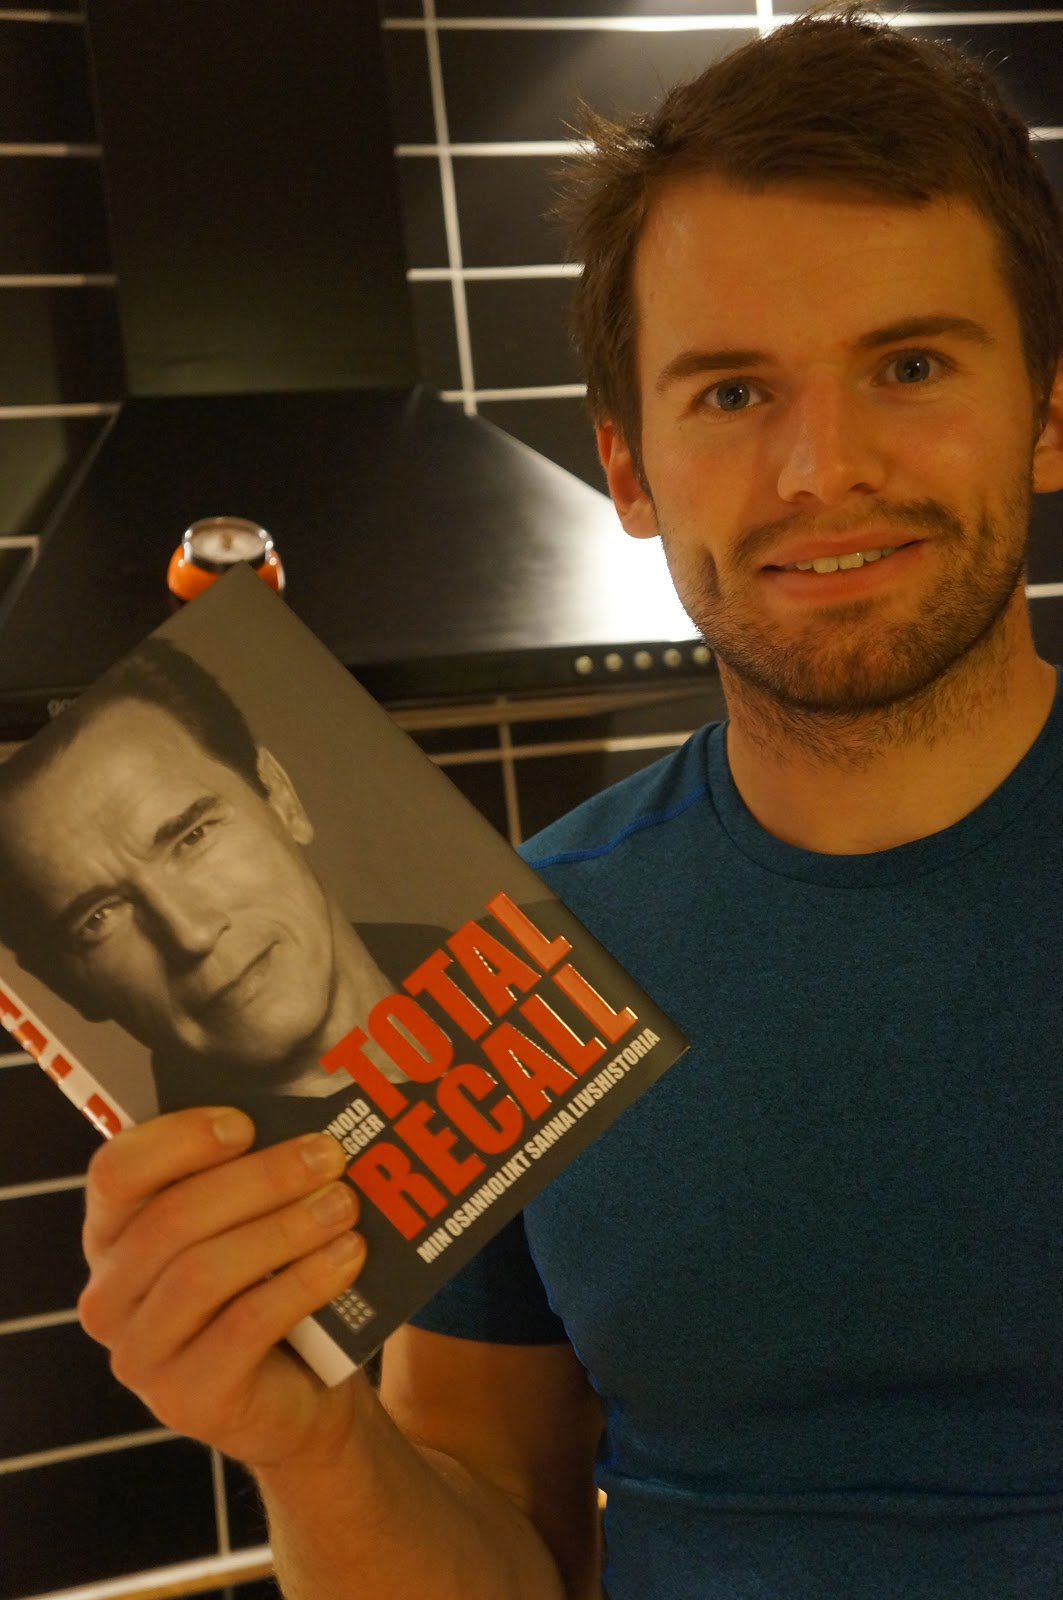 Äntligen! Nu har vi fått hem Arnolds bok, Total Recall. Redan översatt till svenska, bara ett par veckor efter att orginalet (Eng.) kom ut i Sverige.